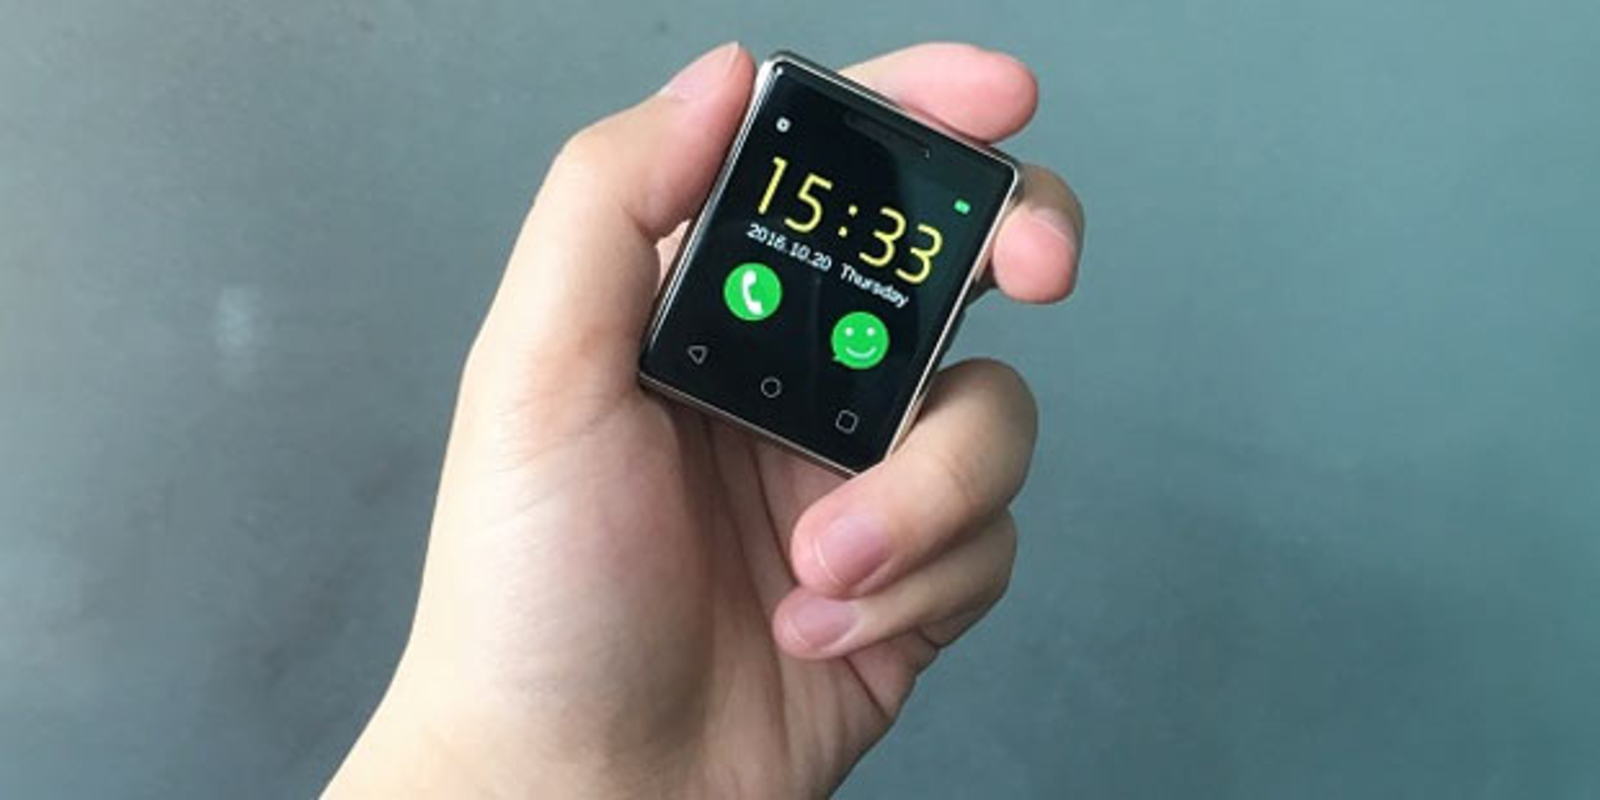 Vphone S8: Kleinstes Smartphone der Welt vorgestellt - Telekom